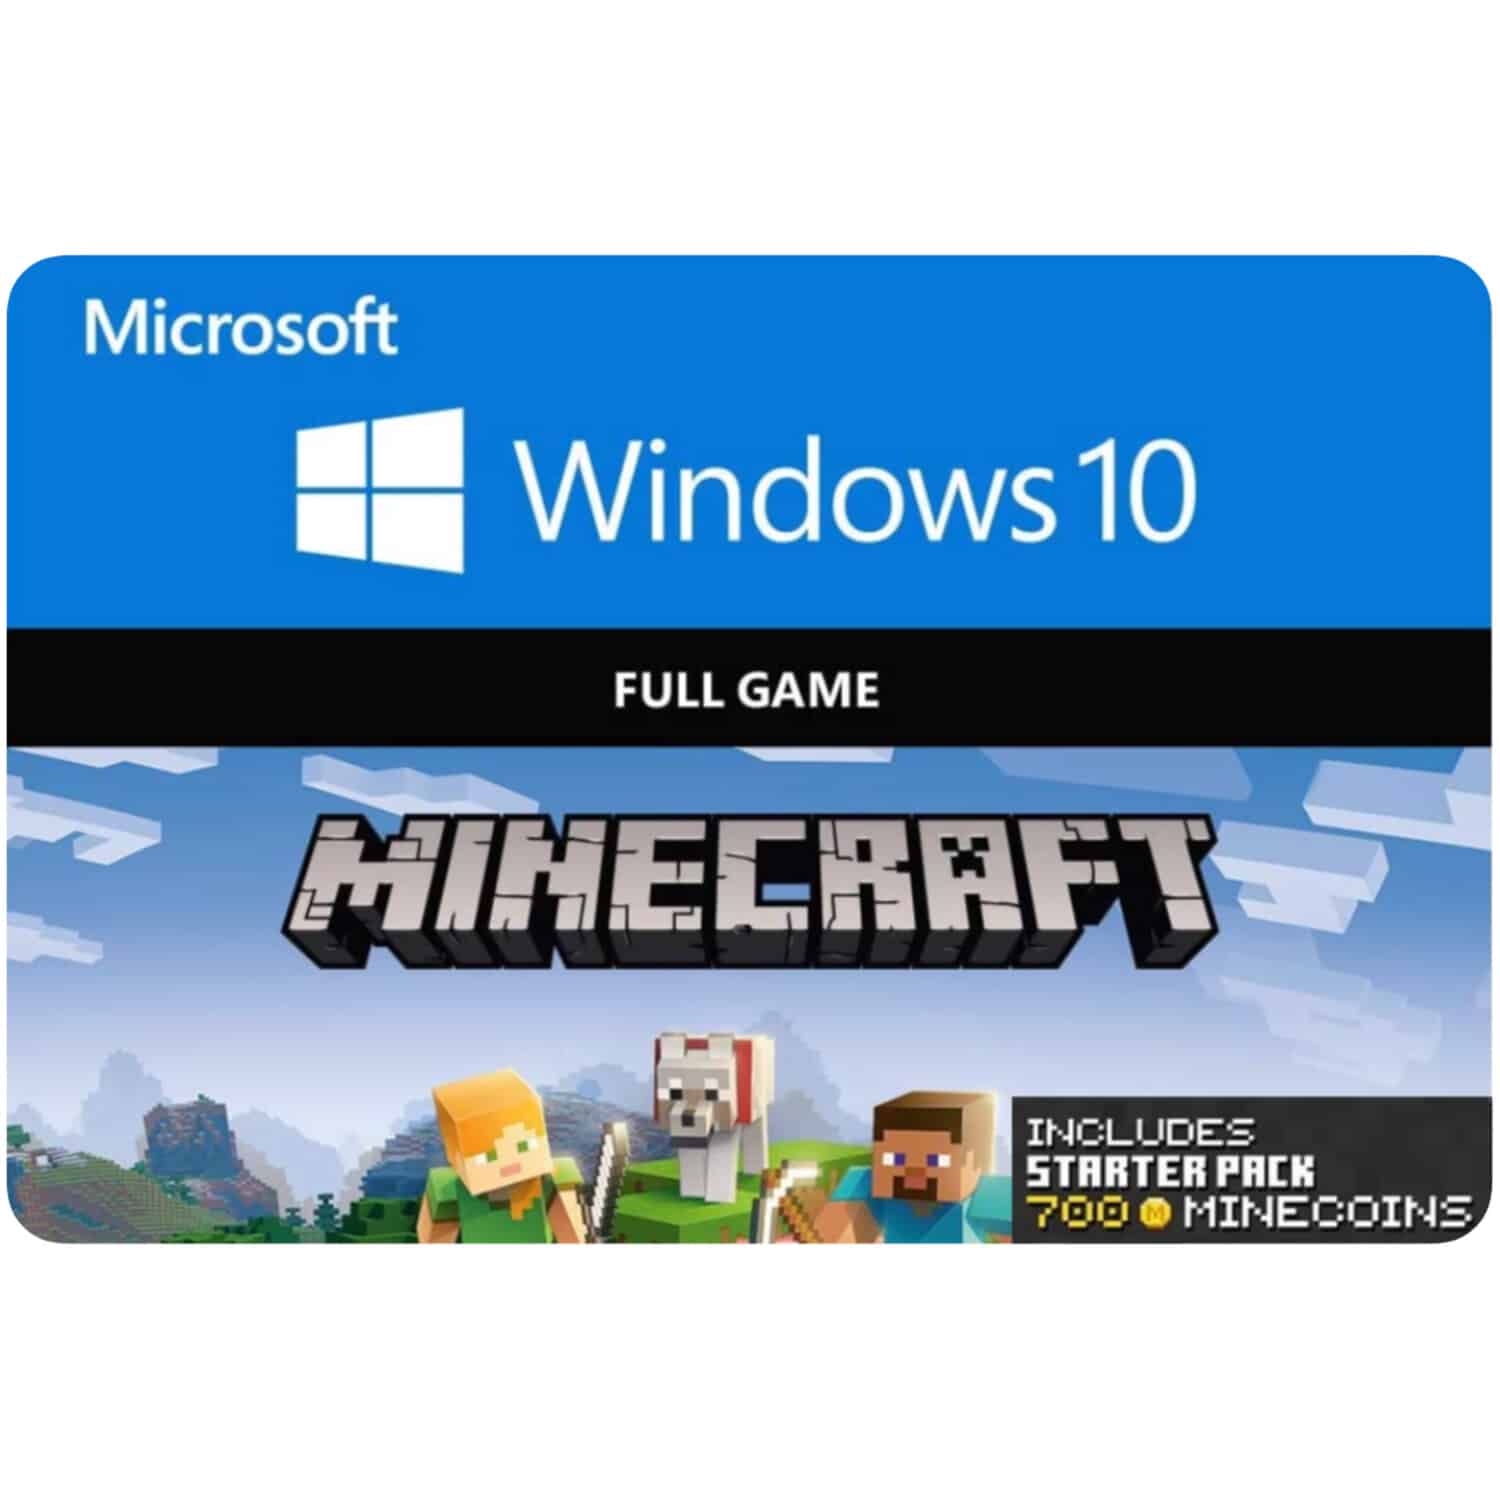 Minecraft Windows 10 Starter Collection Game Code